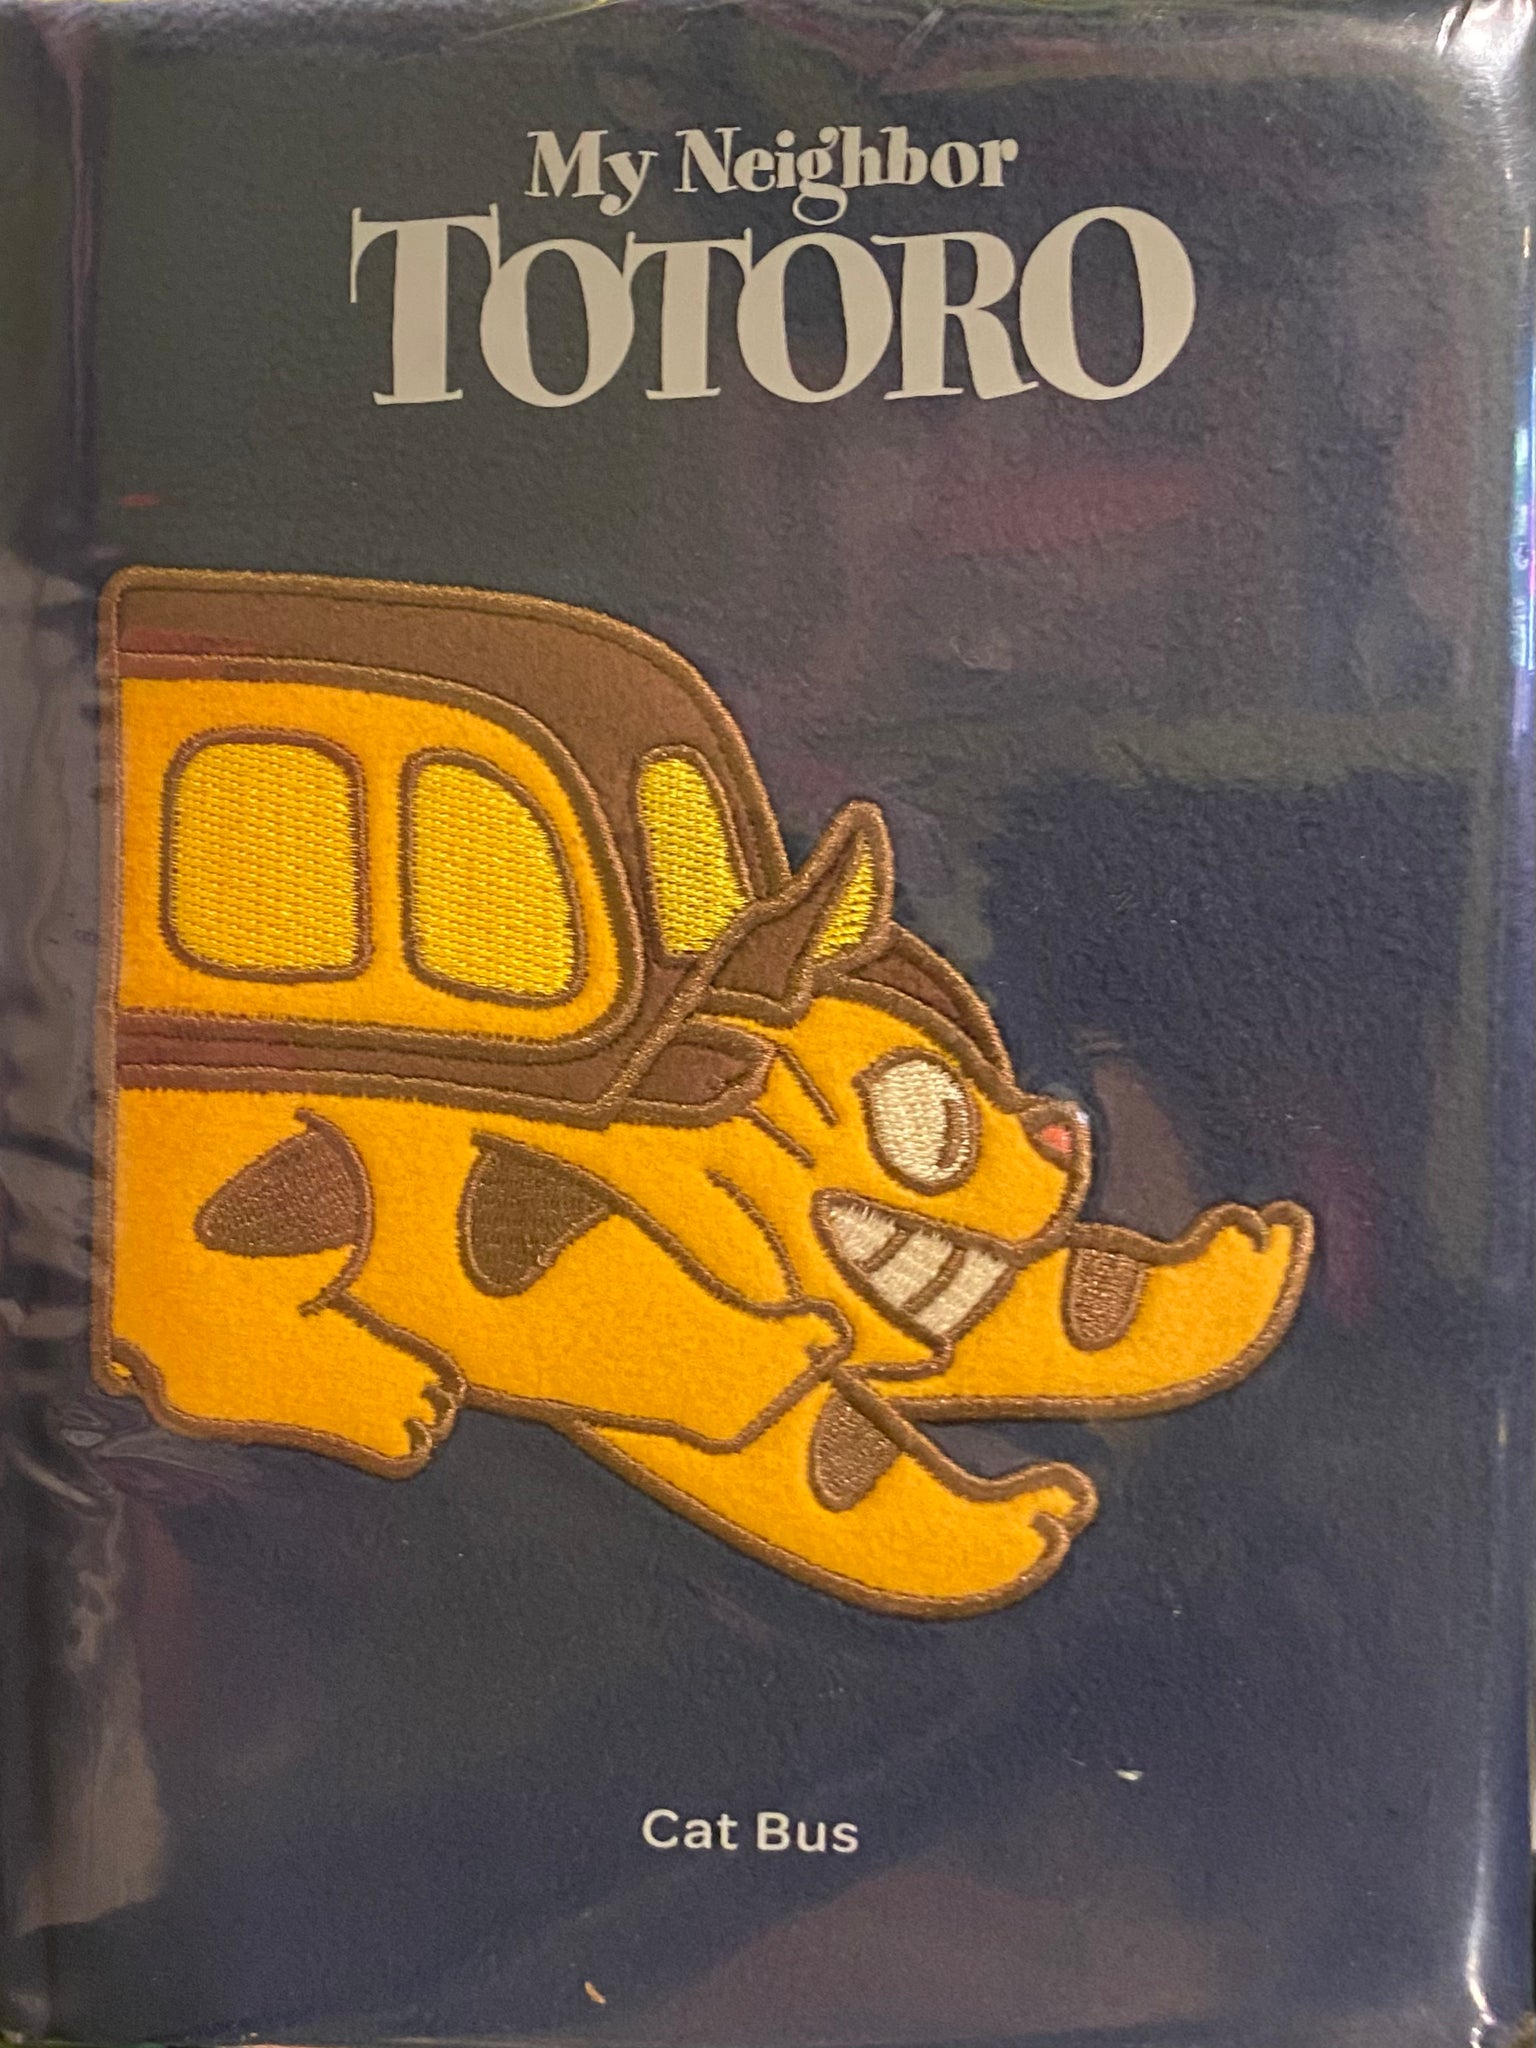 My Neighbor Totoro, Cat Bus Journal